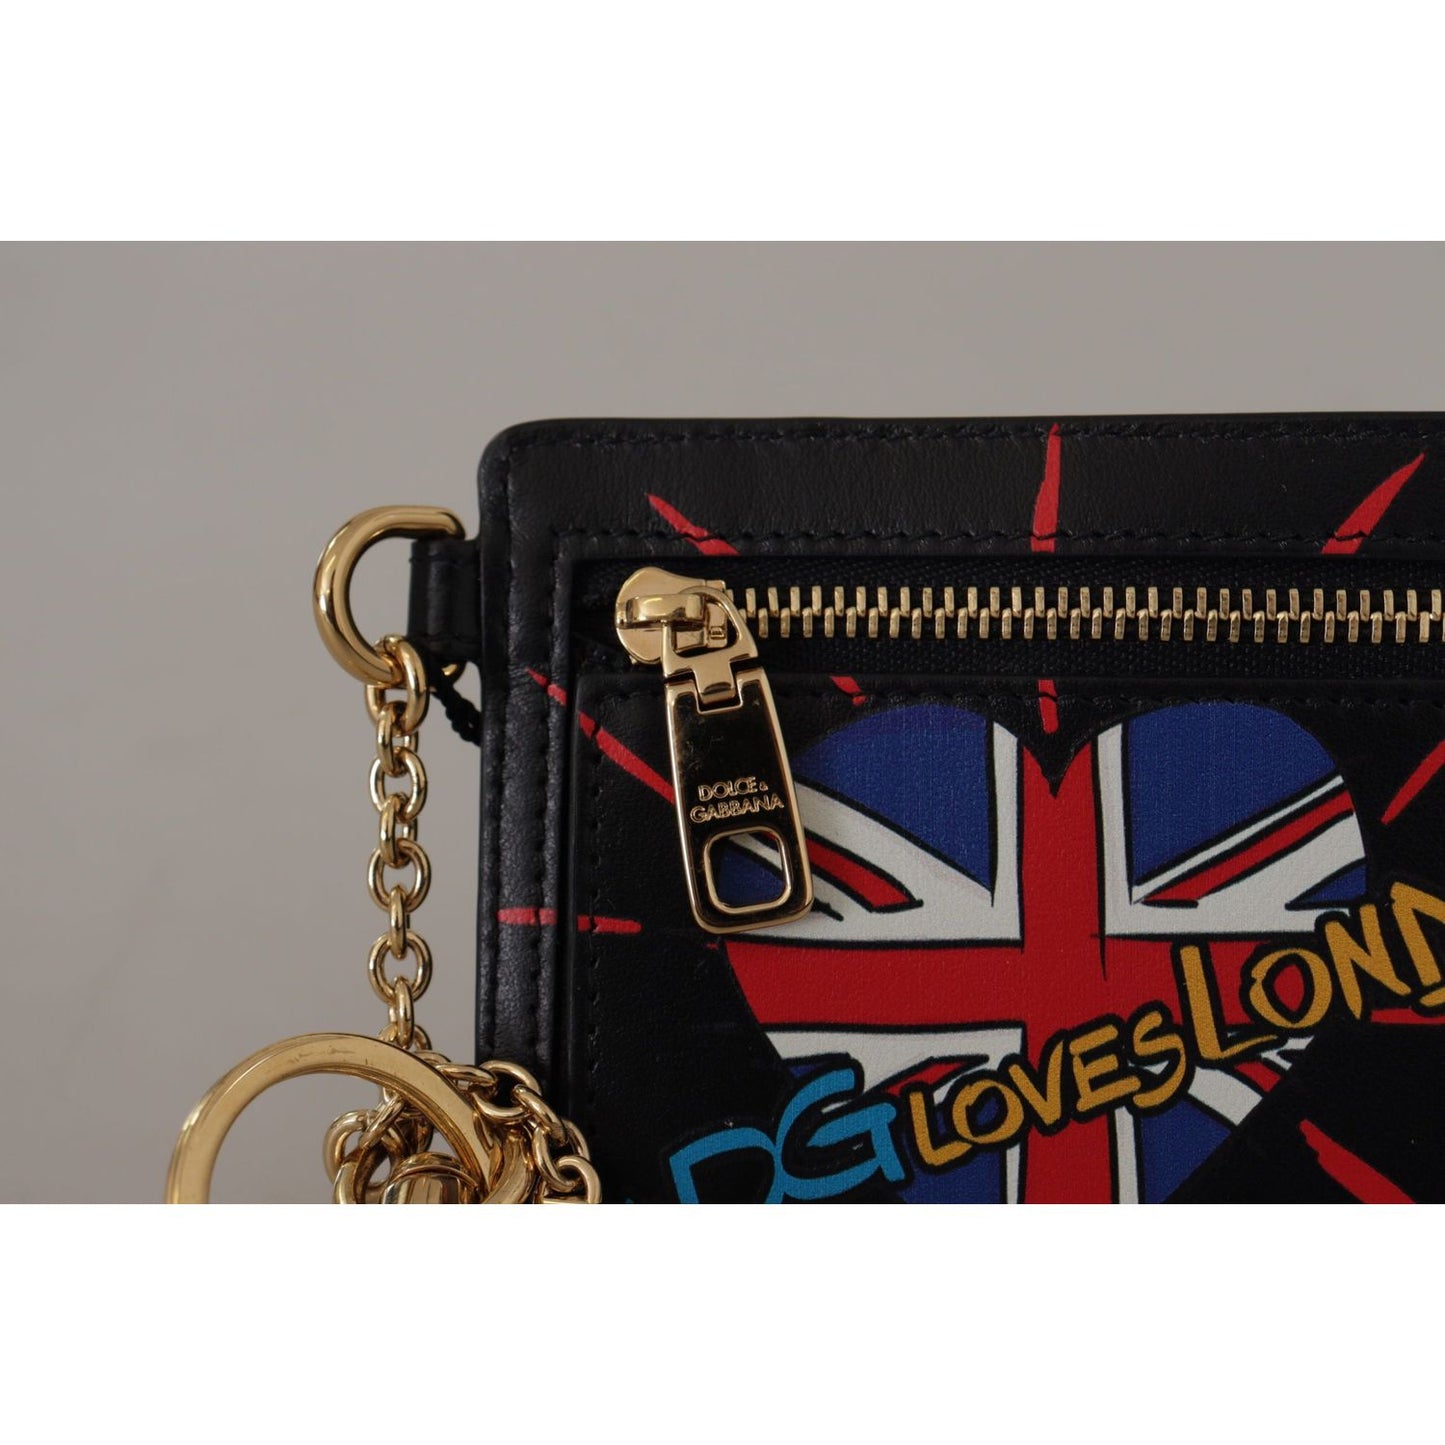 Dolce & Gabbana Elegant Leather Coin Wallet With Keyring black-leather-dgloveslondon-keyring-cardholder-coin-case